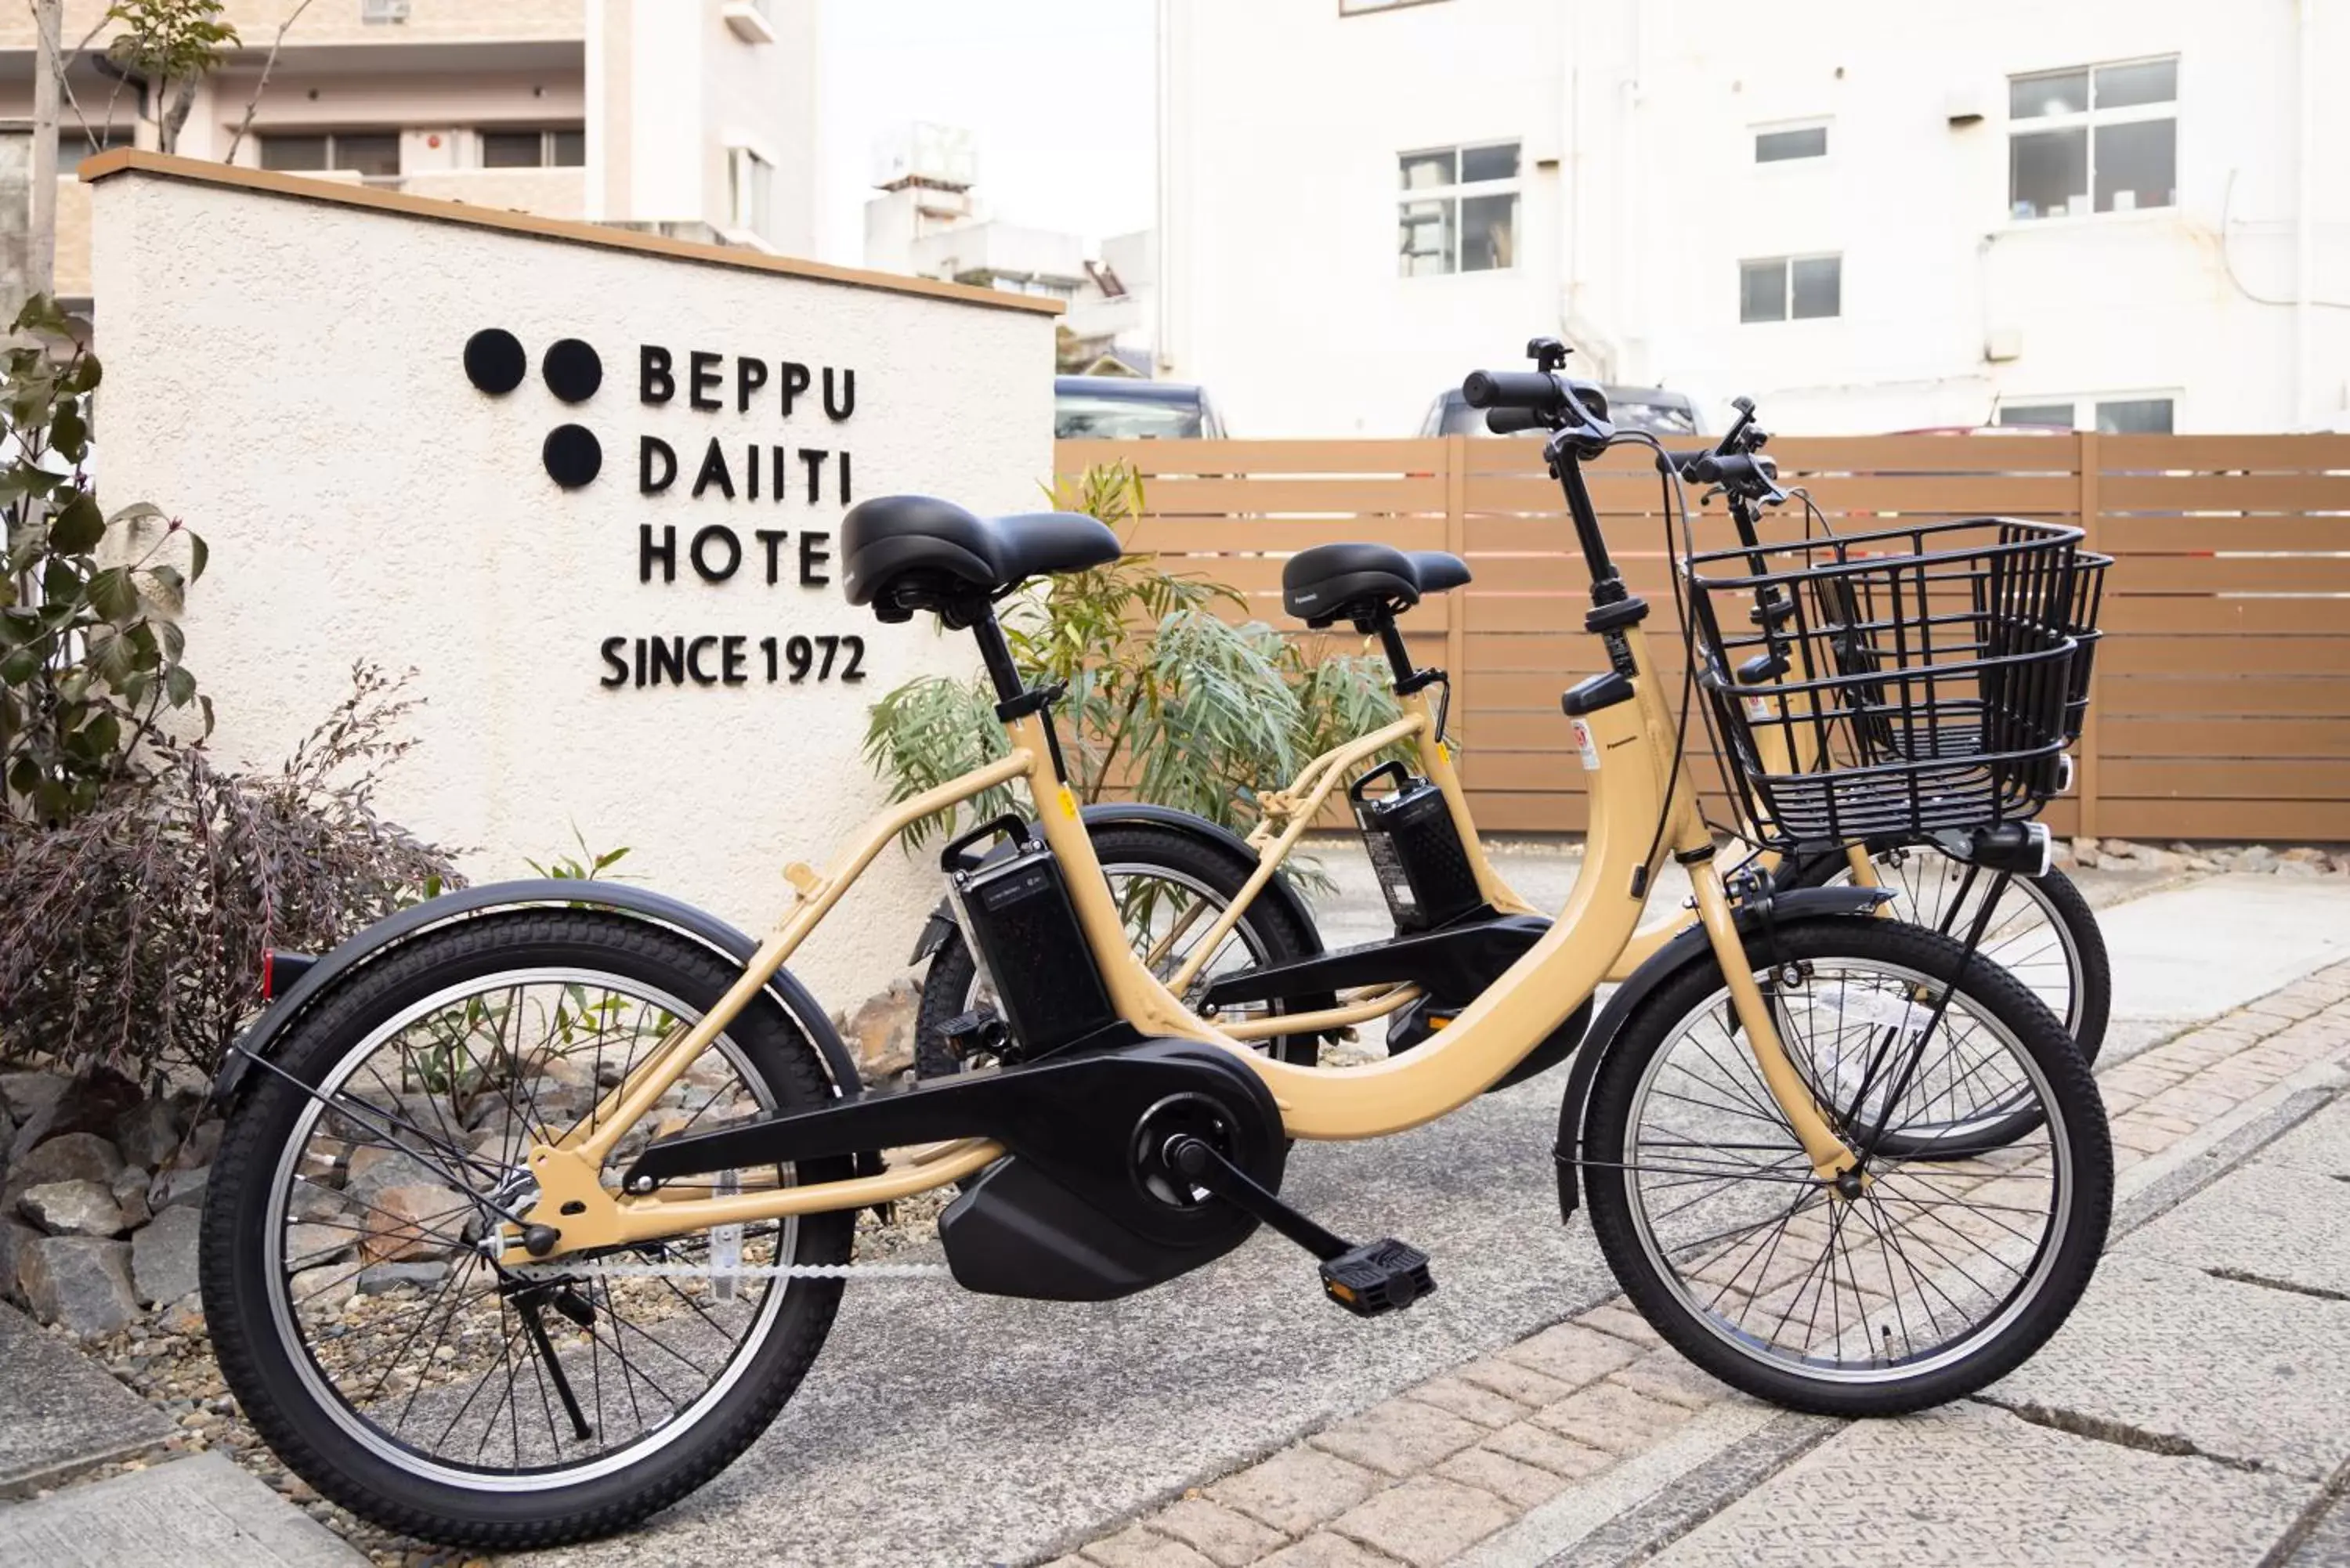 Biking in Beppu Daiiti Hotel